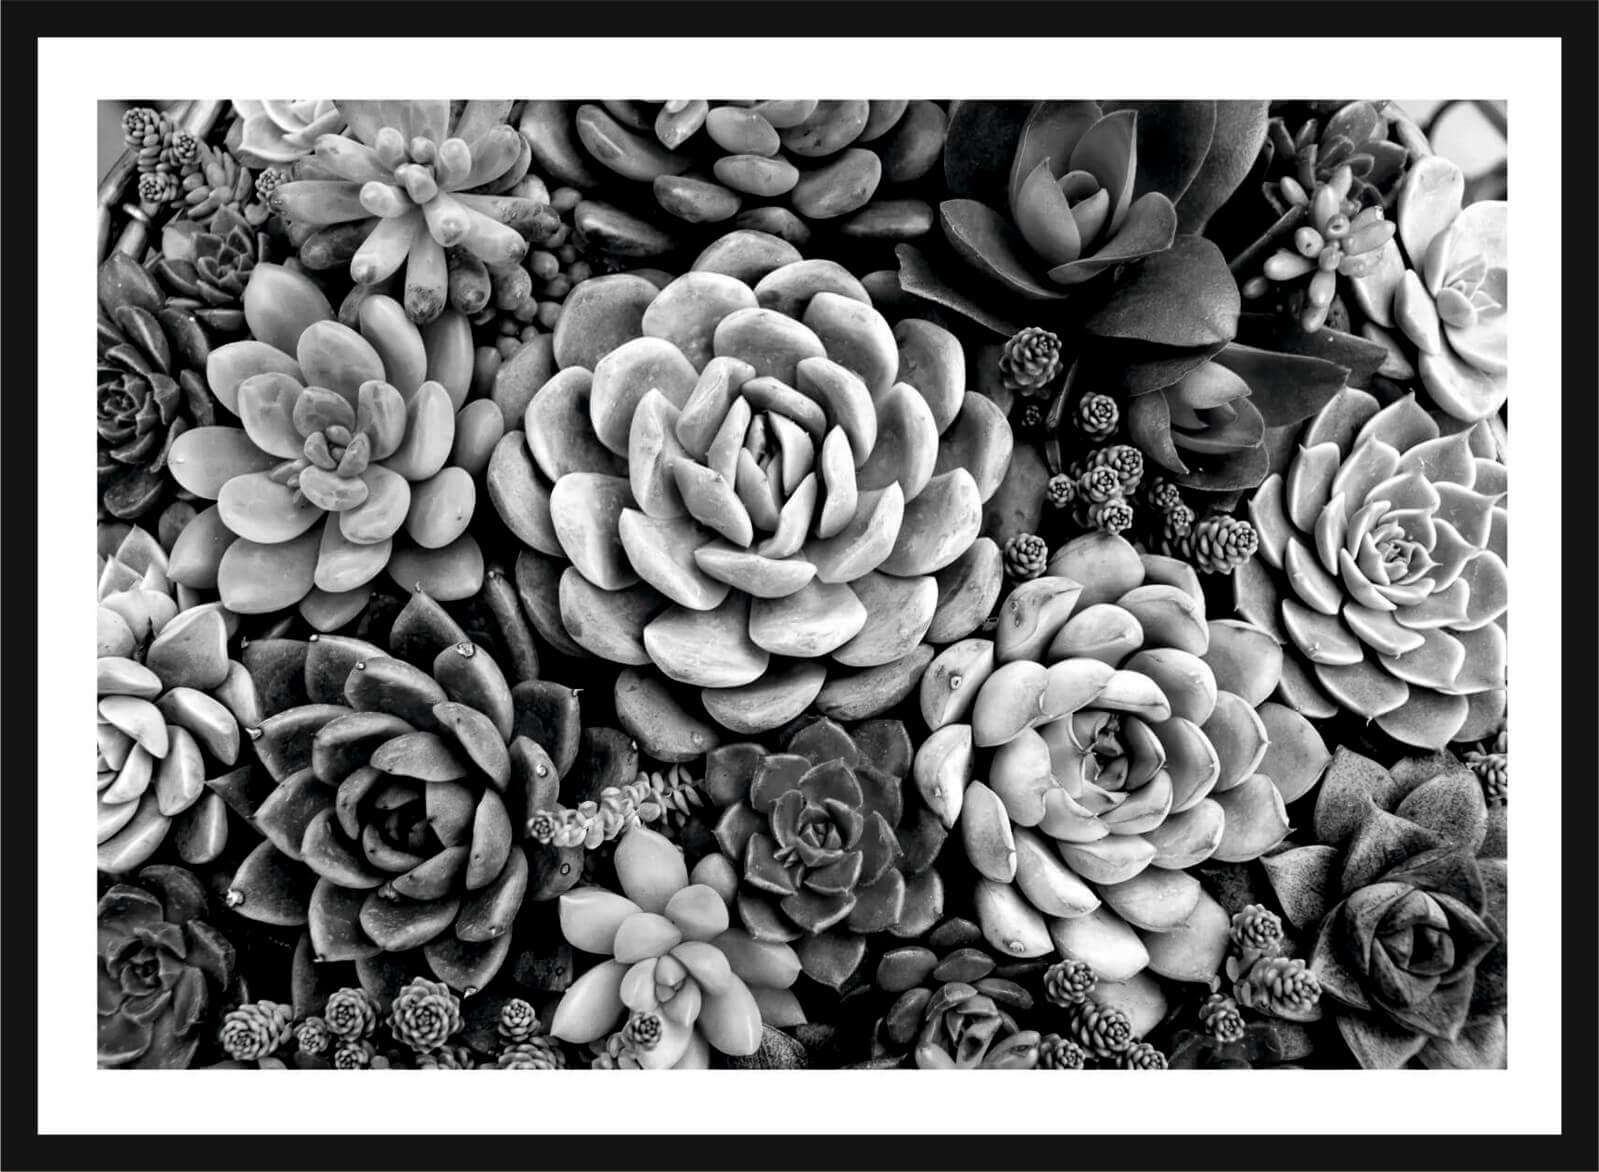 Cuadro con lámina de Cactus Blanco y Negro, Decoración Nórdico, Marco color Negro.